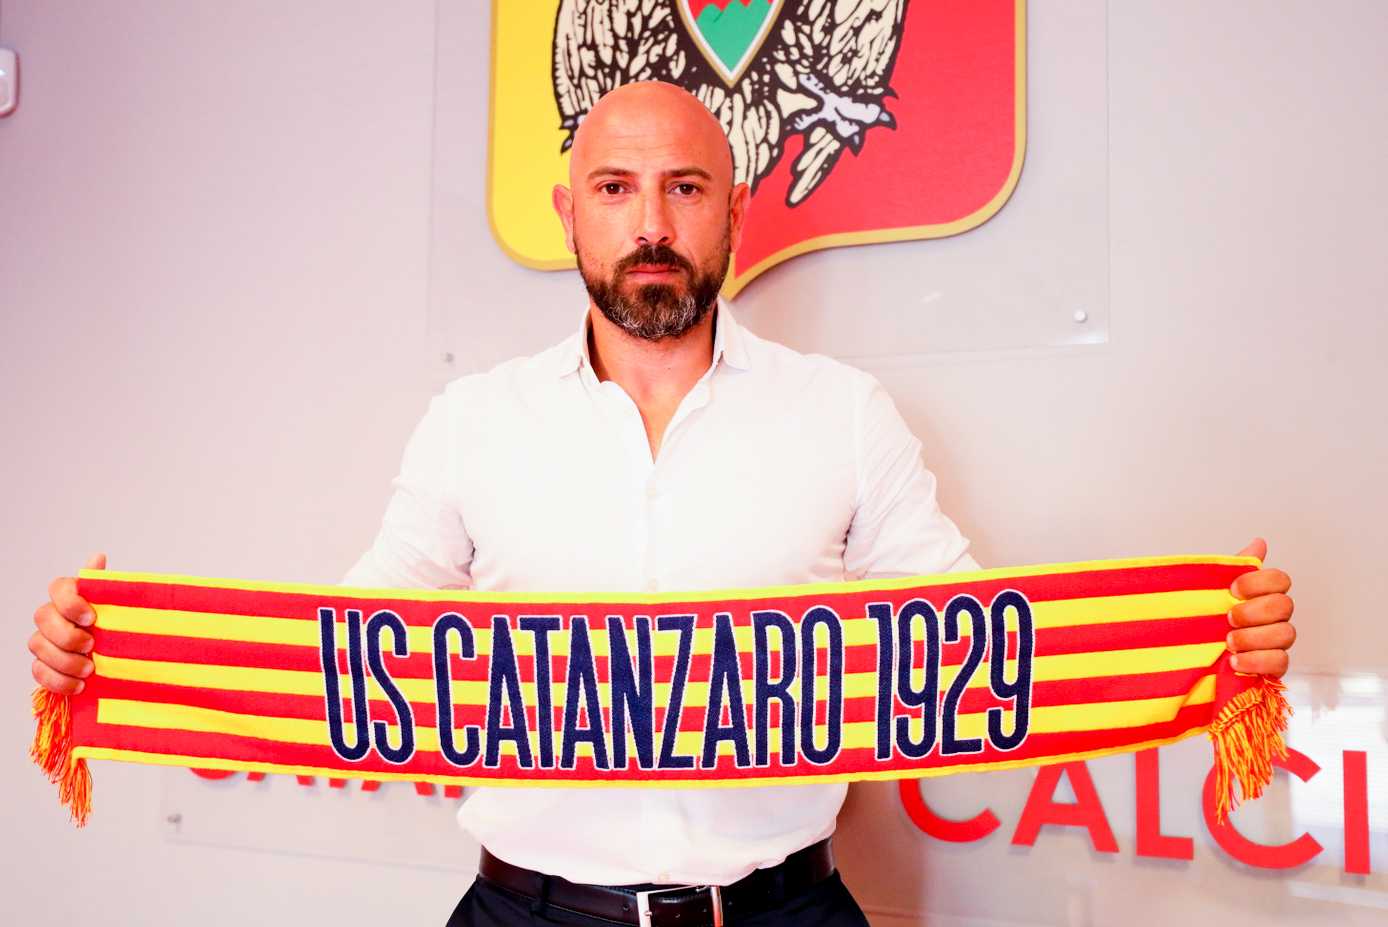 CalcioMercato: Il tecnico Antonio Calabro nuovo allenatore del US Catanzaro